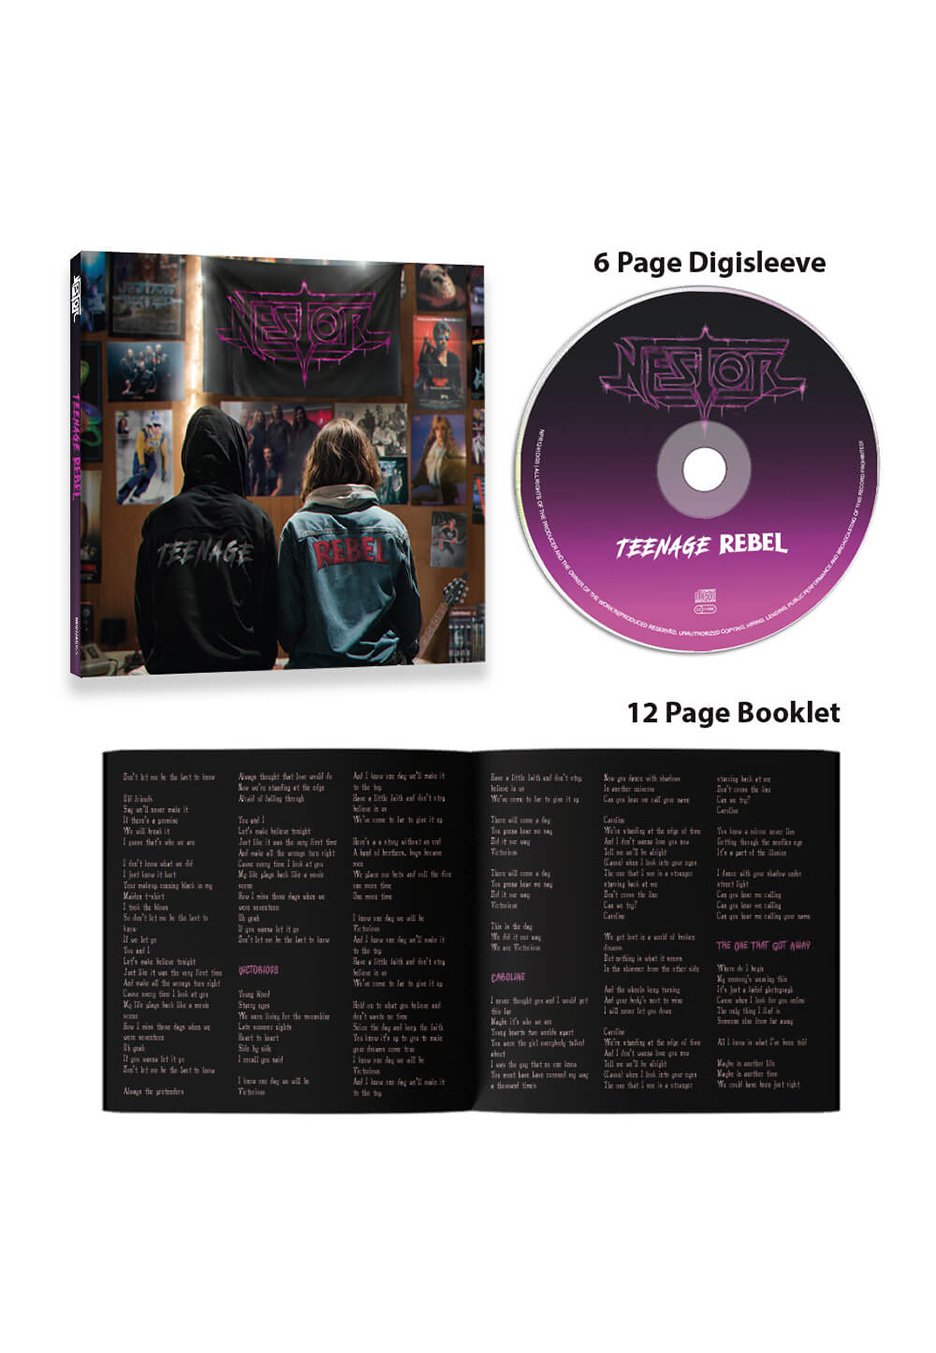 Nestor - Teenage Rebel - Digisleeve CD